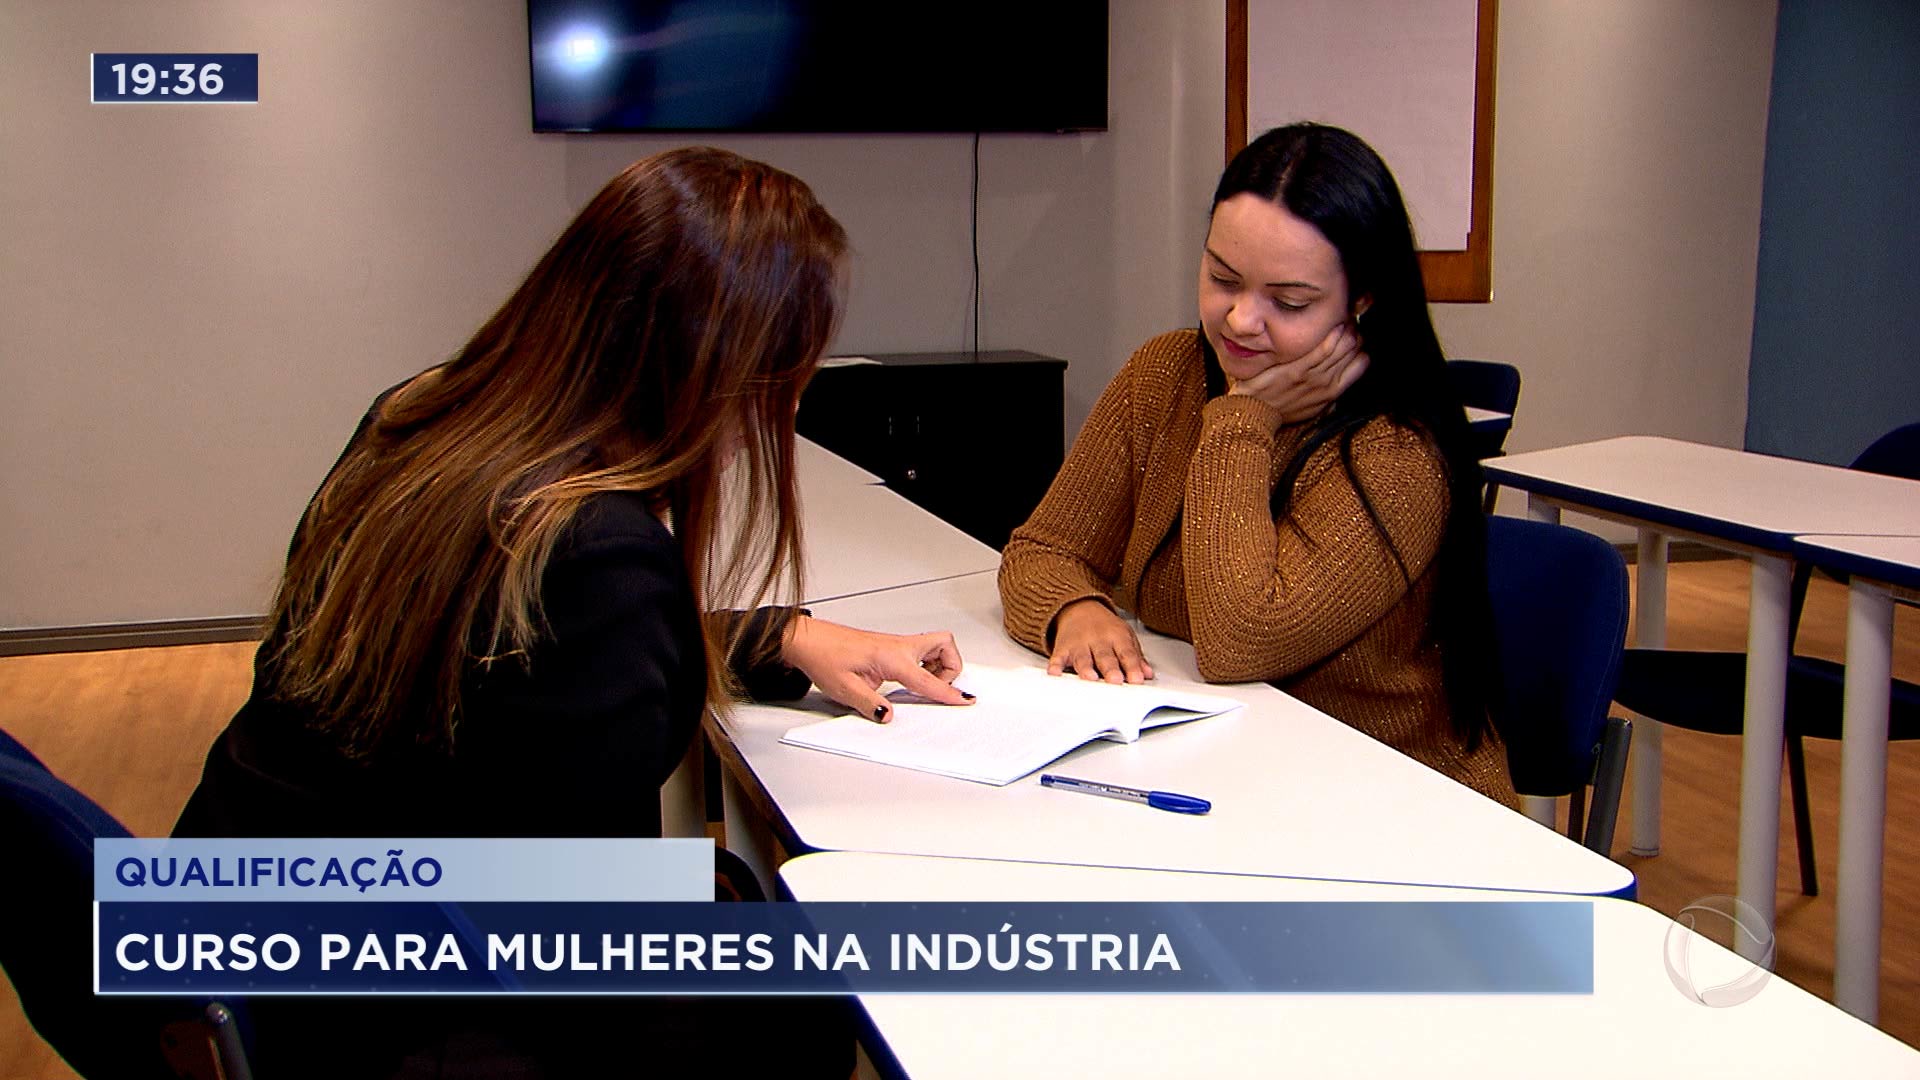 Vídeo: São José dos Campos cria curso de qualificação para mulheres